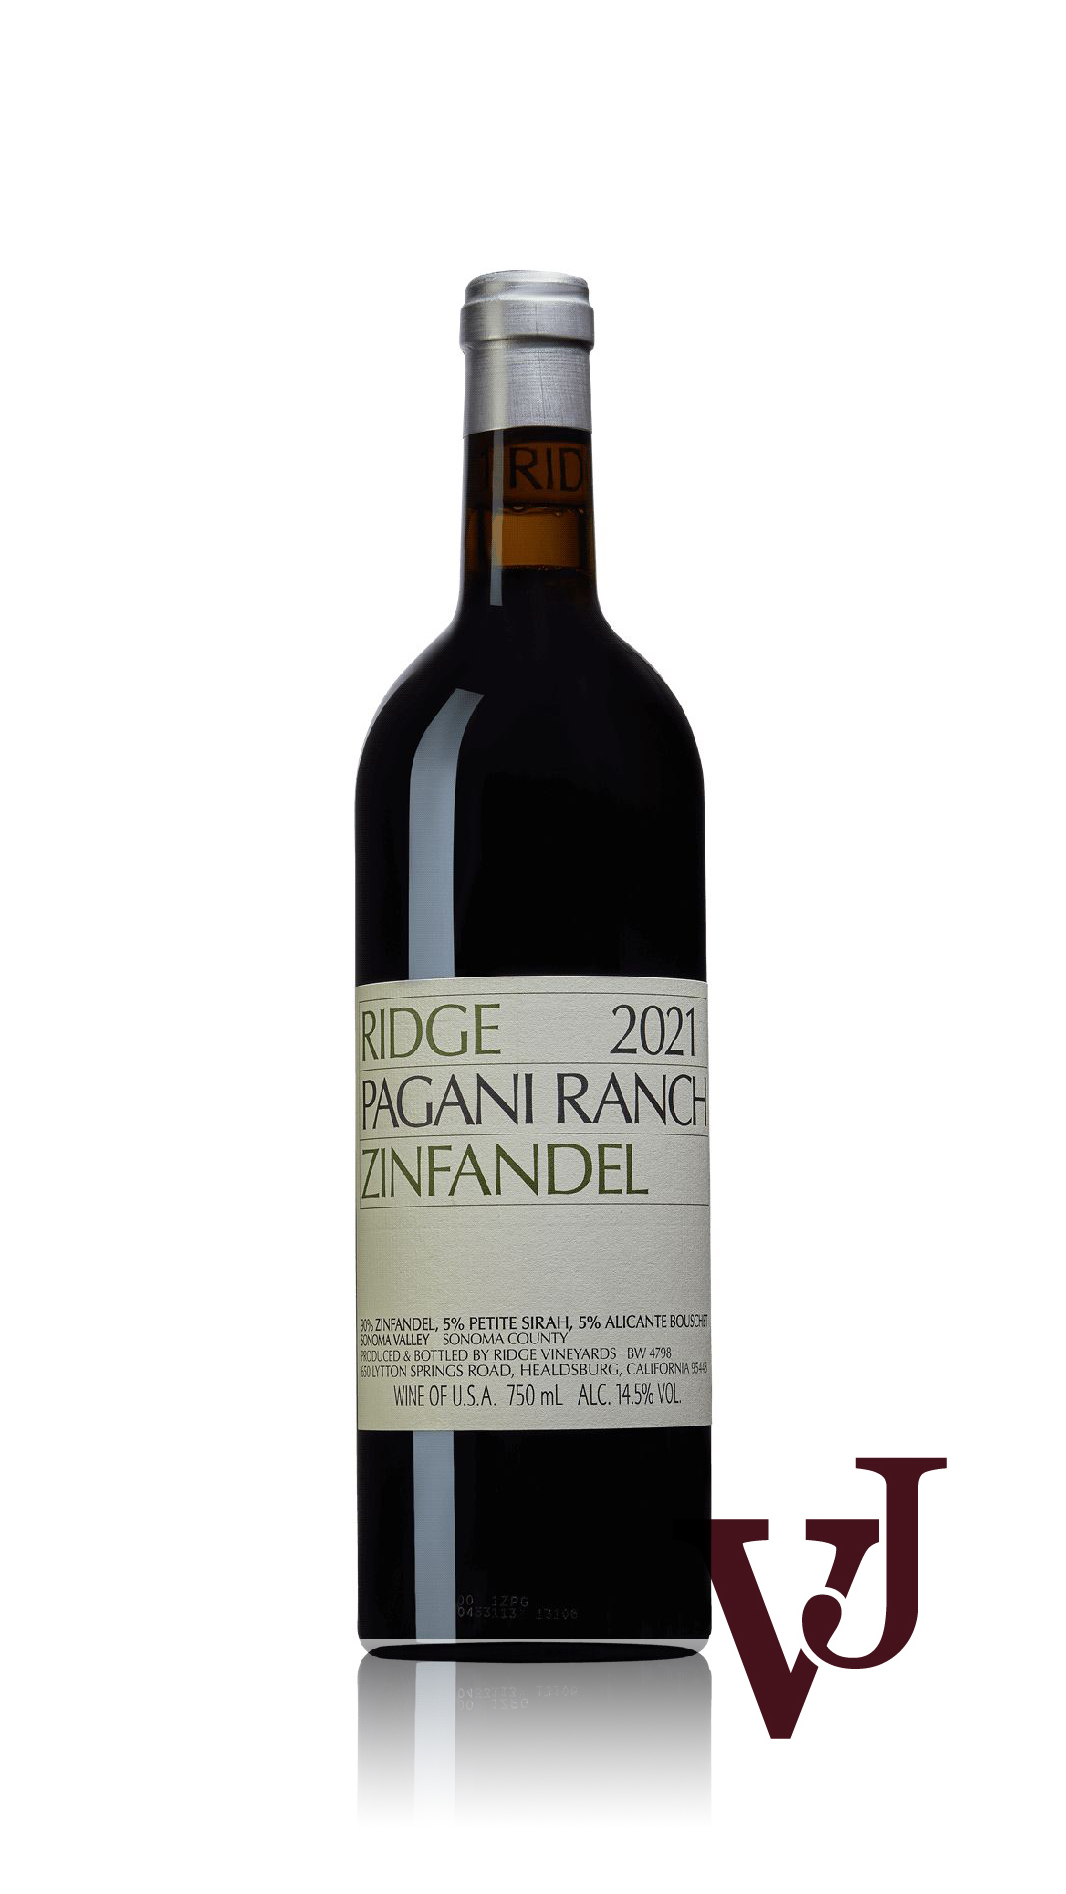 Rött vin - Ridge Pagani Ranch Zinfandel 2021 artikel nummer 9324701 från producenten Ridge Vineyards från USA